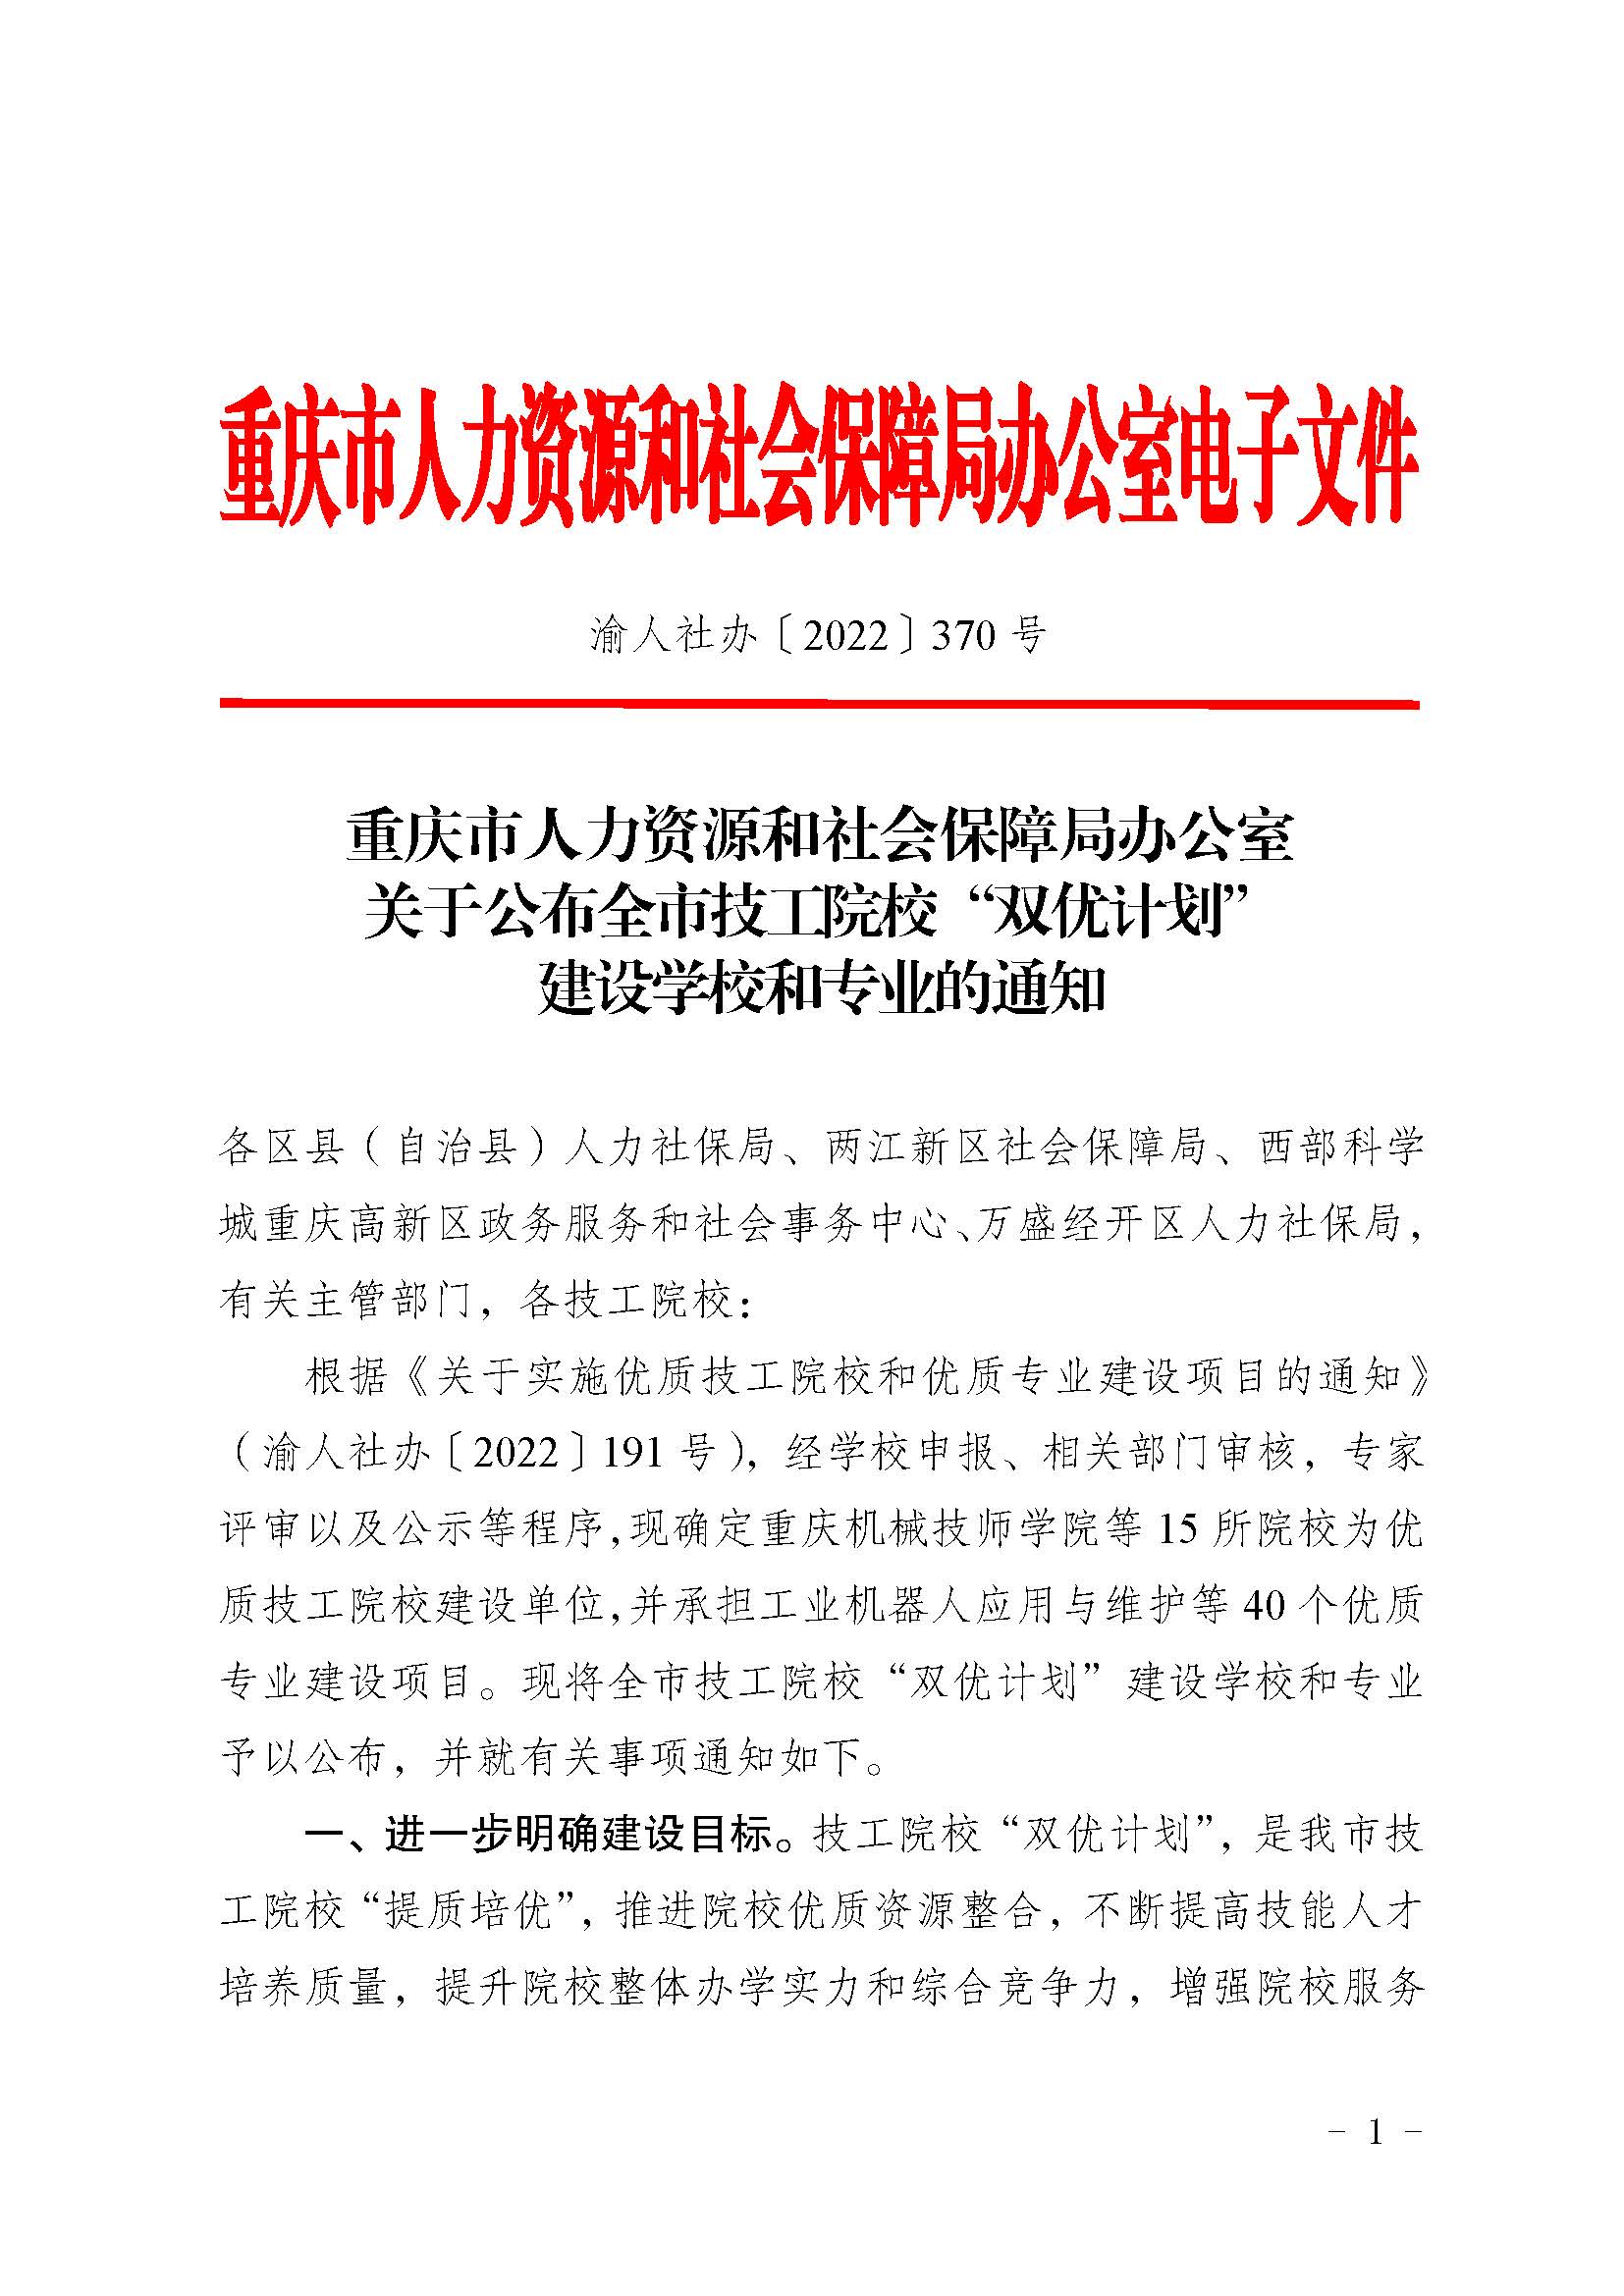 重庆市人力资源和社会保障局办公室关于公布全市技工院校“双优计划”建设学校和专业的通知